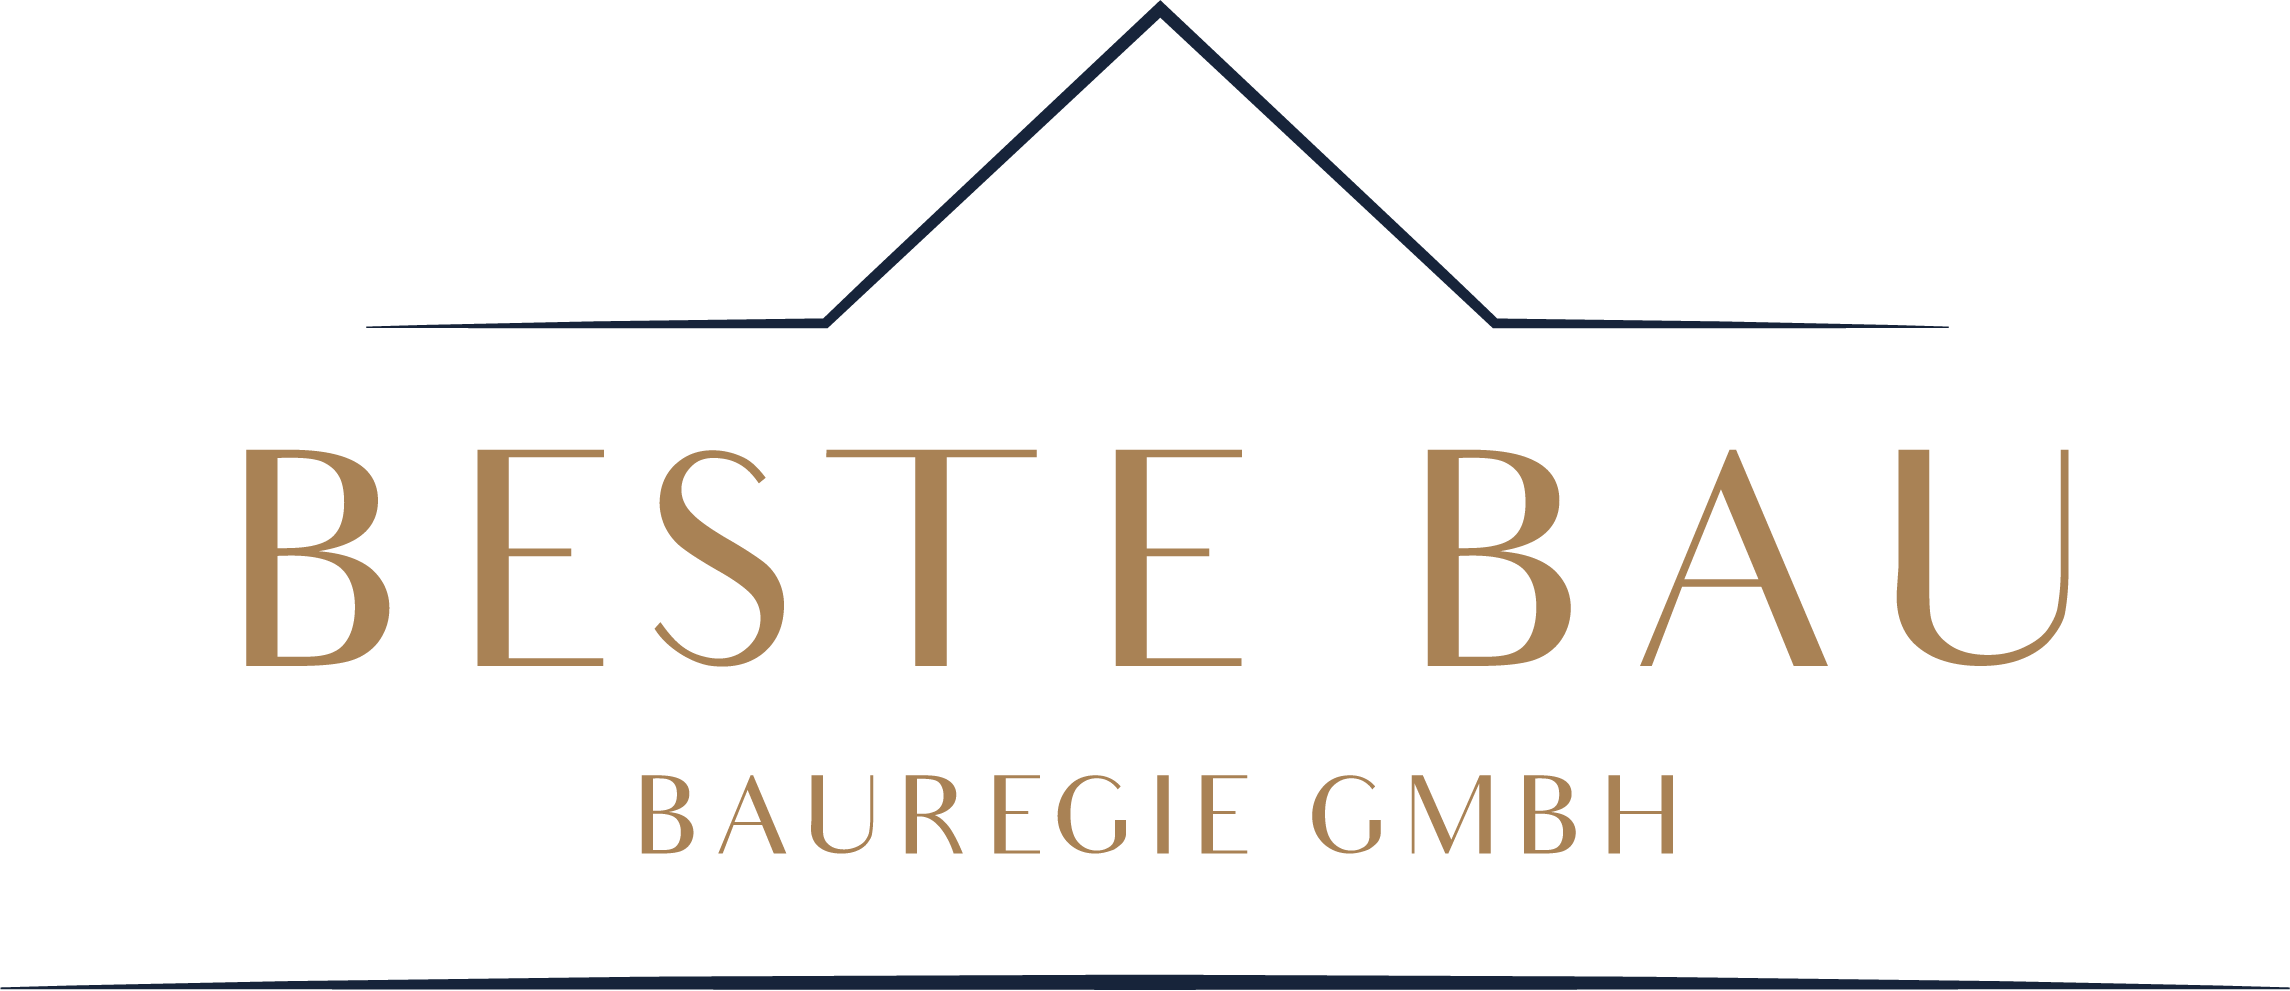 Beste Bau Bauregie GmbH